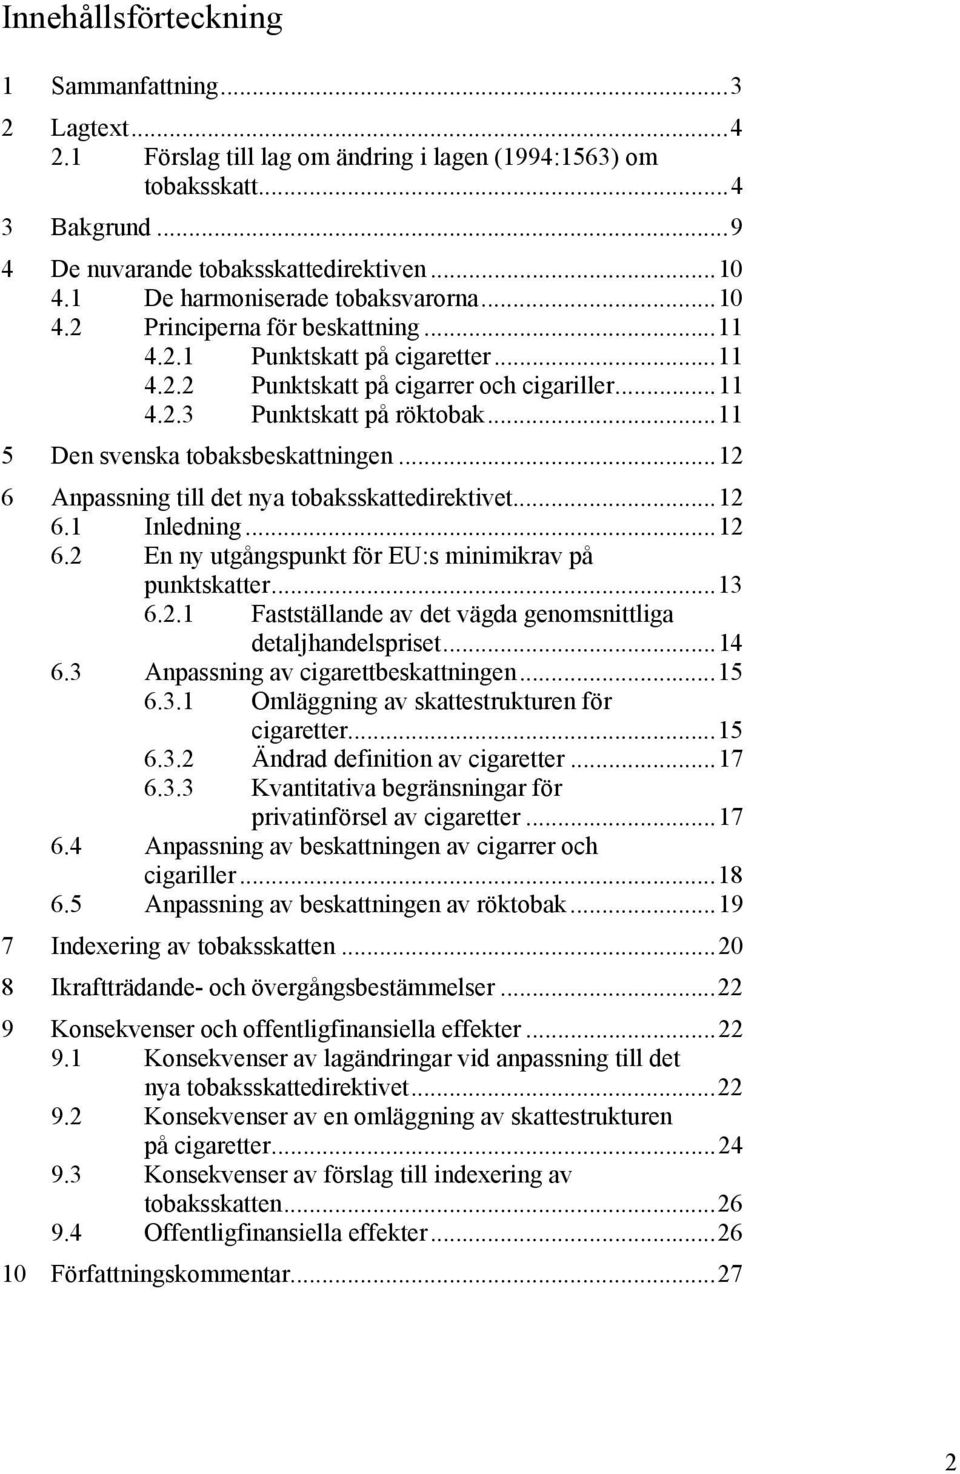 ..11 5 Den svenska tobaksbeskattningen...12 6 Anpassning till det nya tobaksskattedirektivet...12 6.1 Inledning...12 6.2 En ny utgångspunkt för EU:s minimikrav på punktskatter...13 6.2.1 Fastställande av det vägda genomsnittliga detaljhandelspriset.